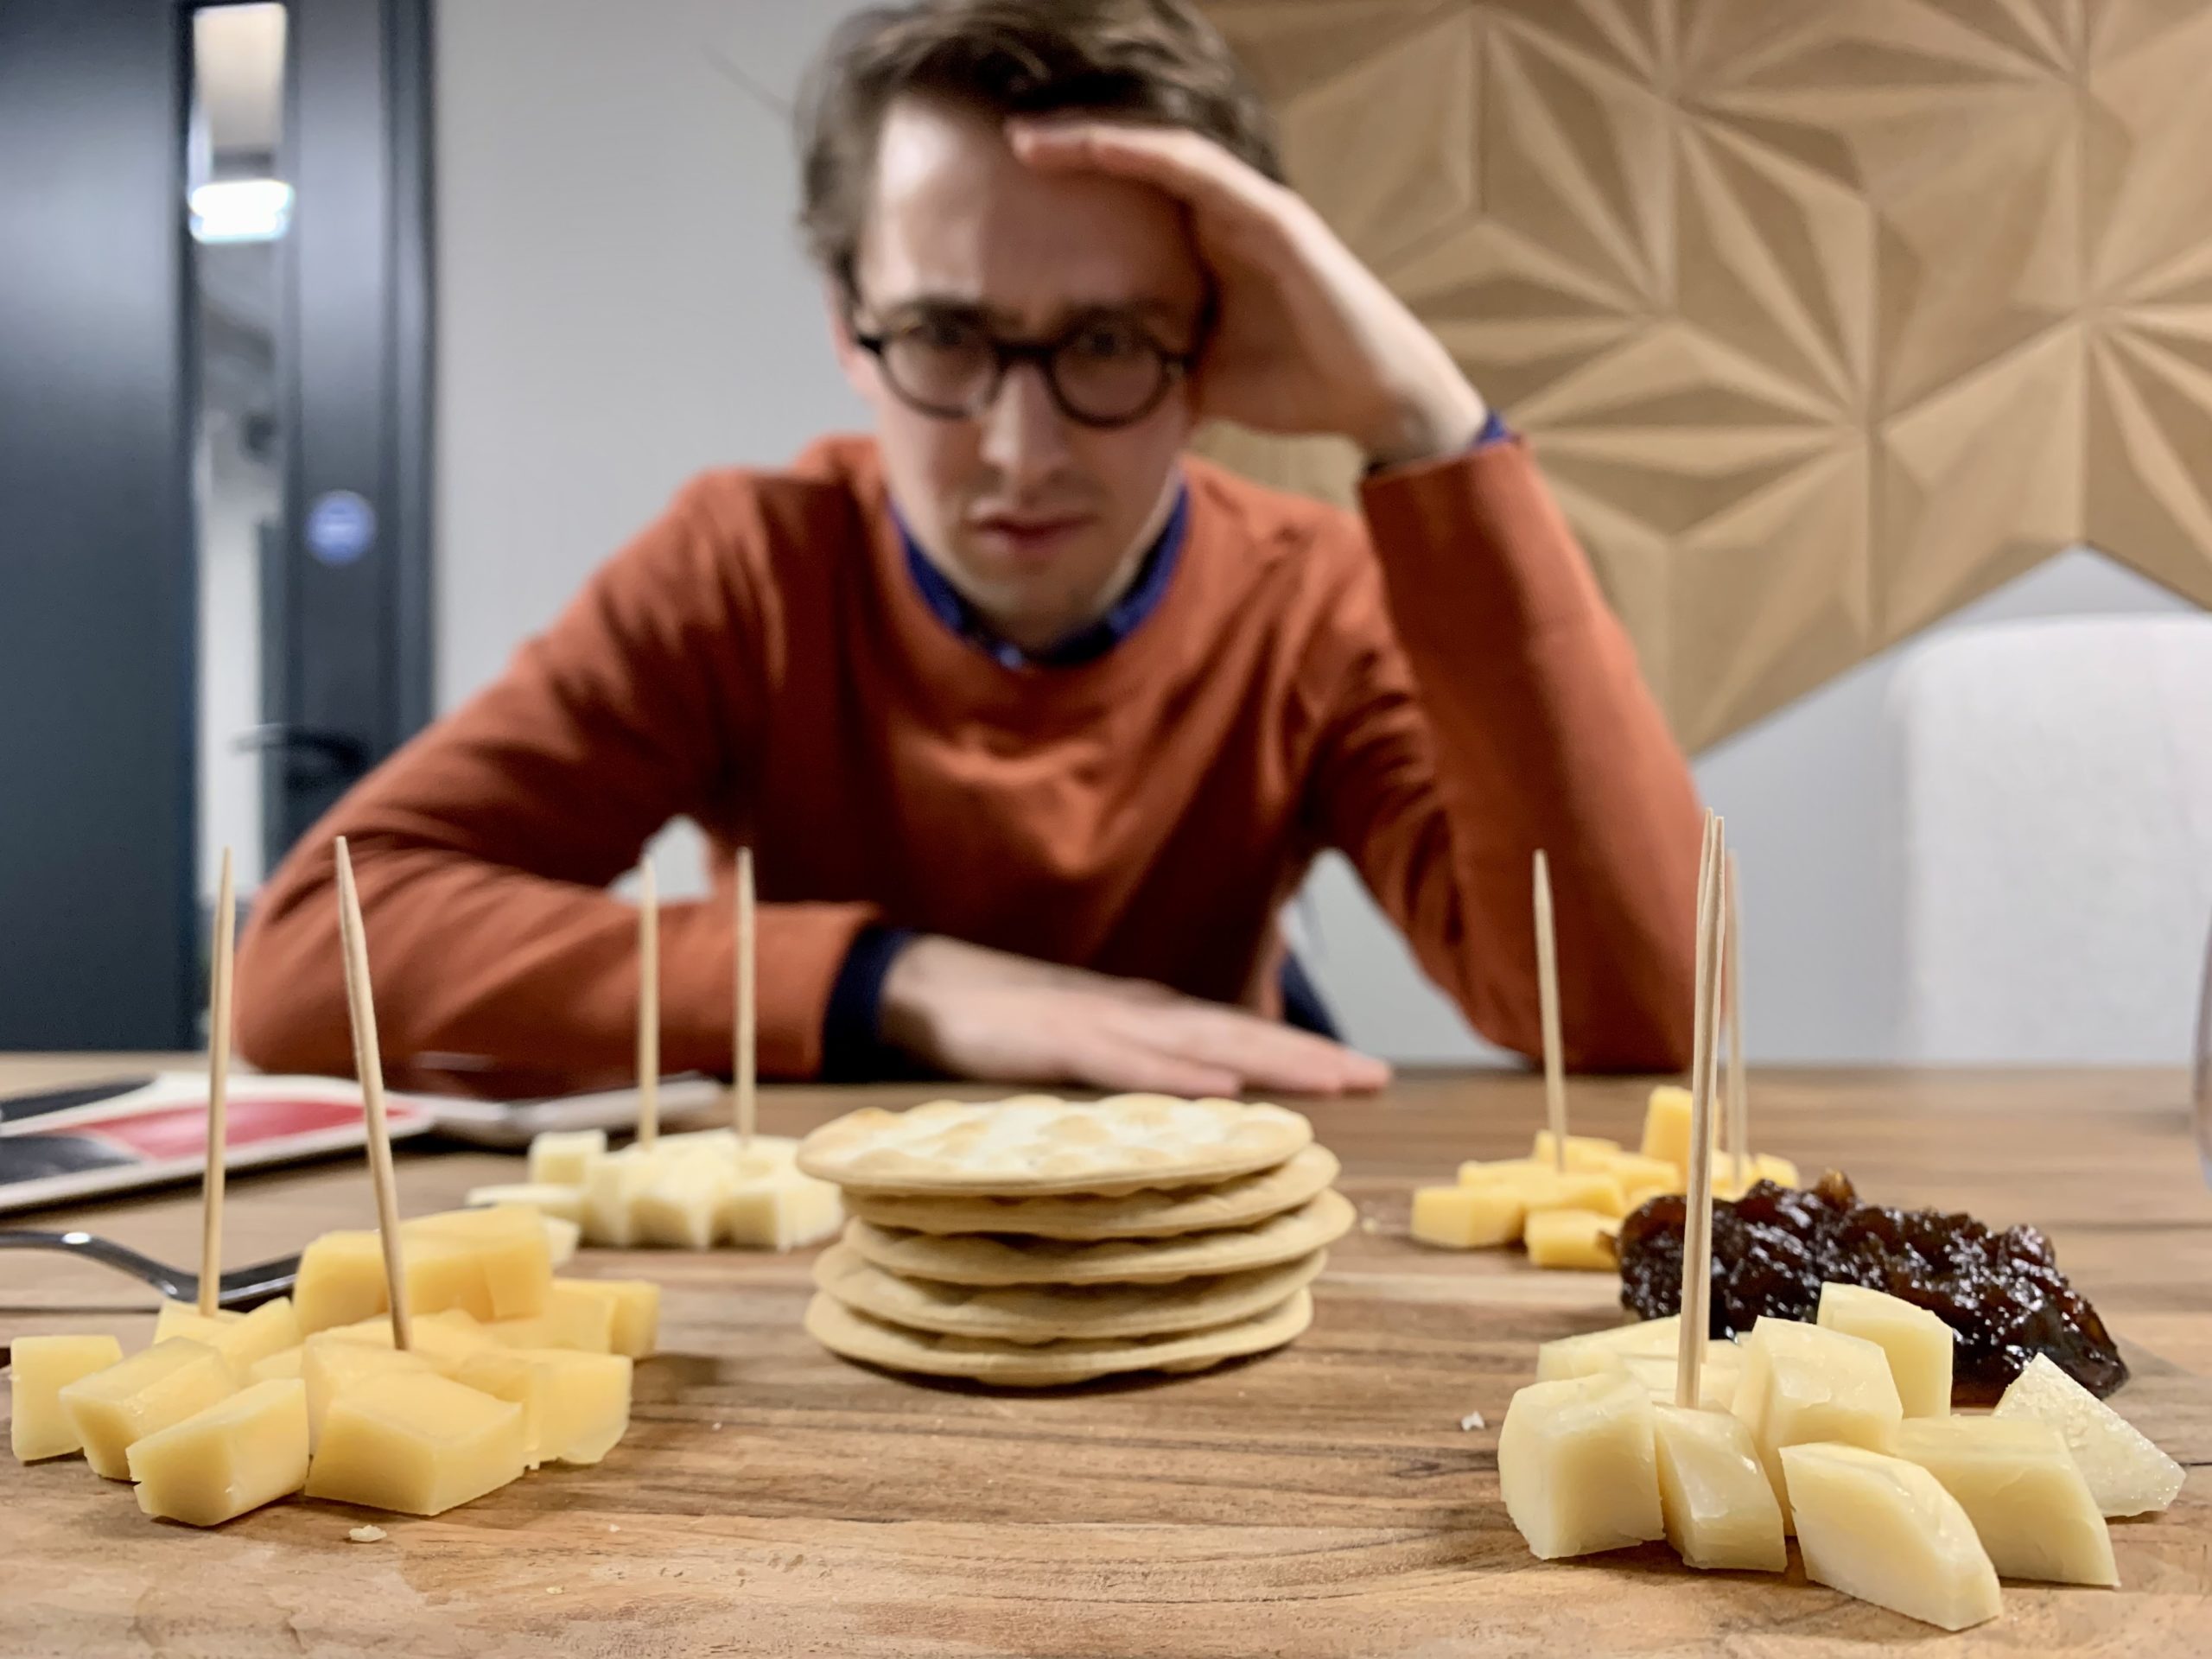 Mitä jos seuraavaksi nauttimasi juustolajitelma olisi valmistettu panemalla?